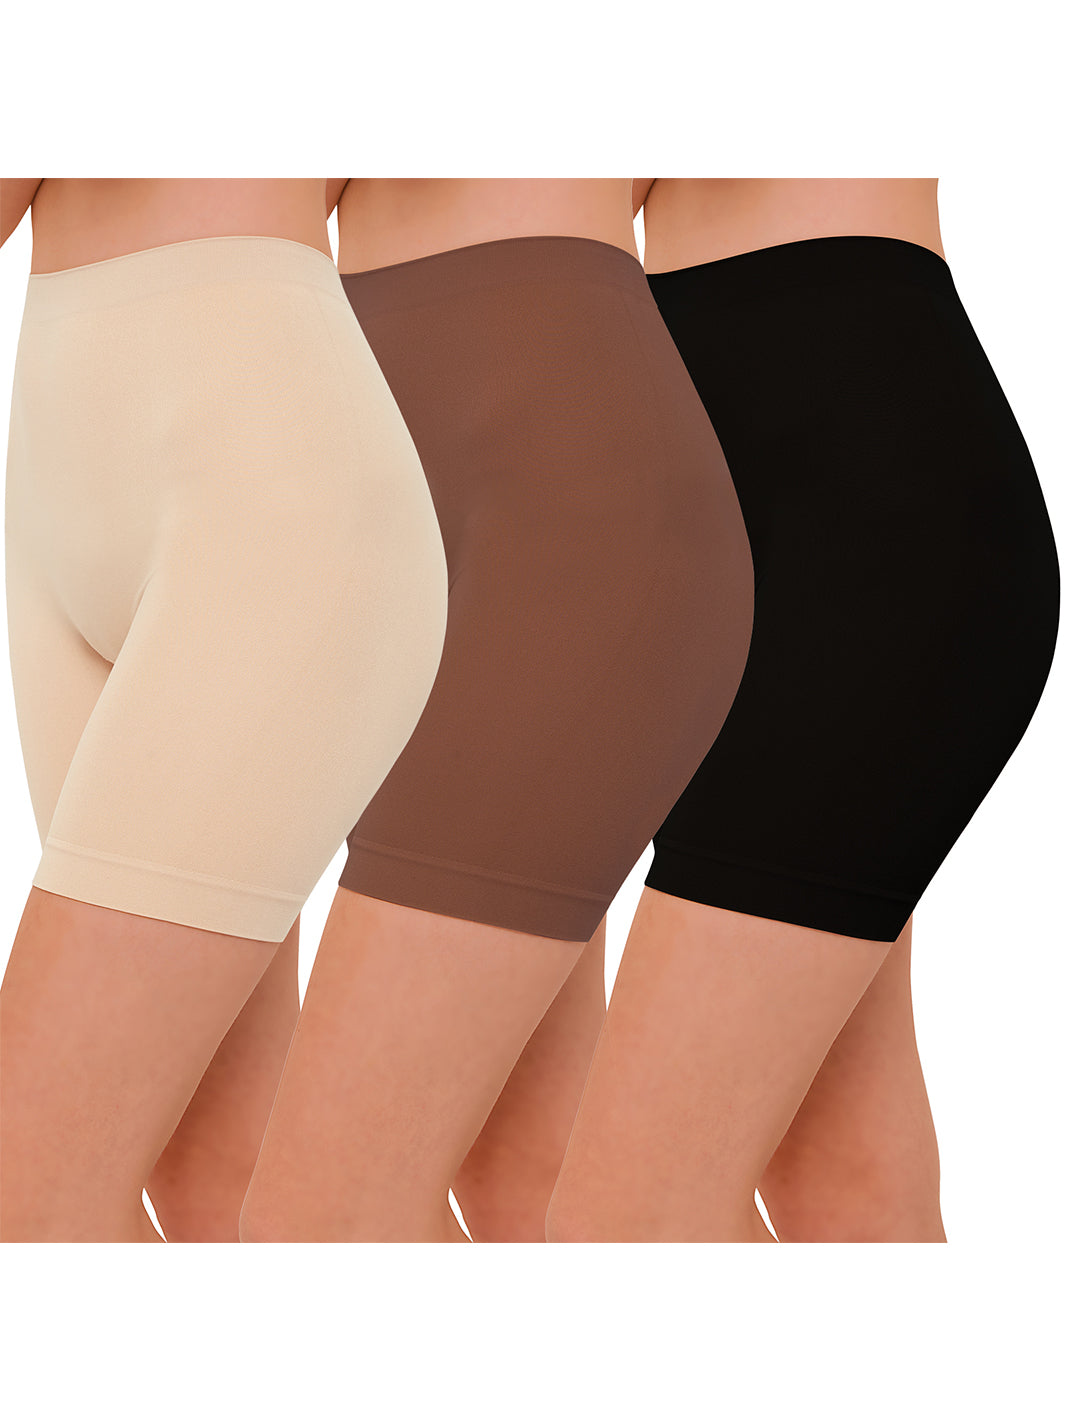 Lot de 3 shorts slip pour femmes